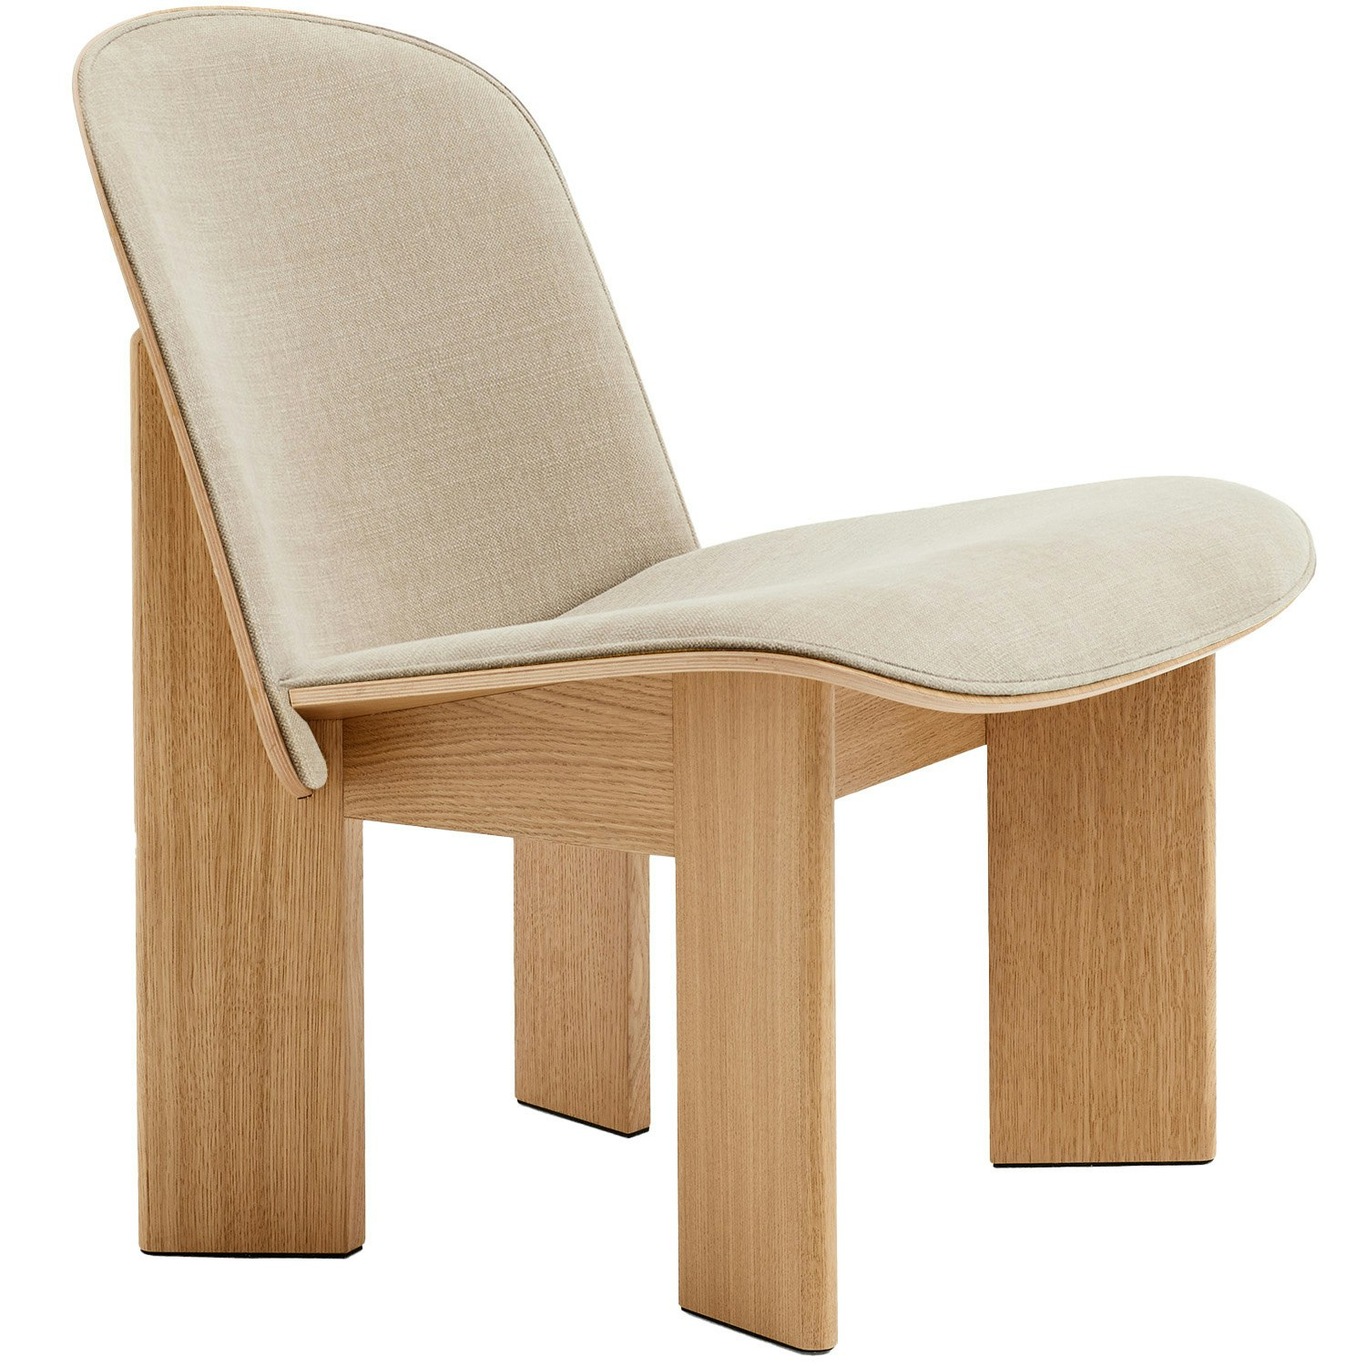 Chisel Loungestoel met Gestoffeerde Voorkant, Eiken / Linara 216